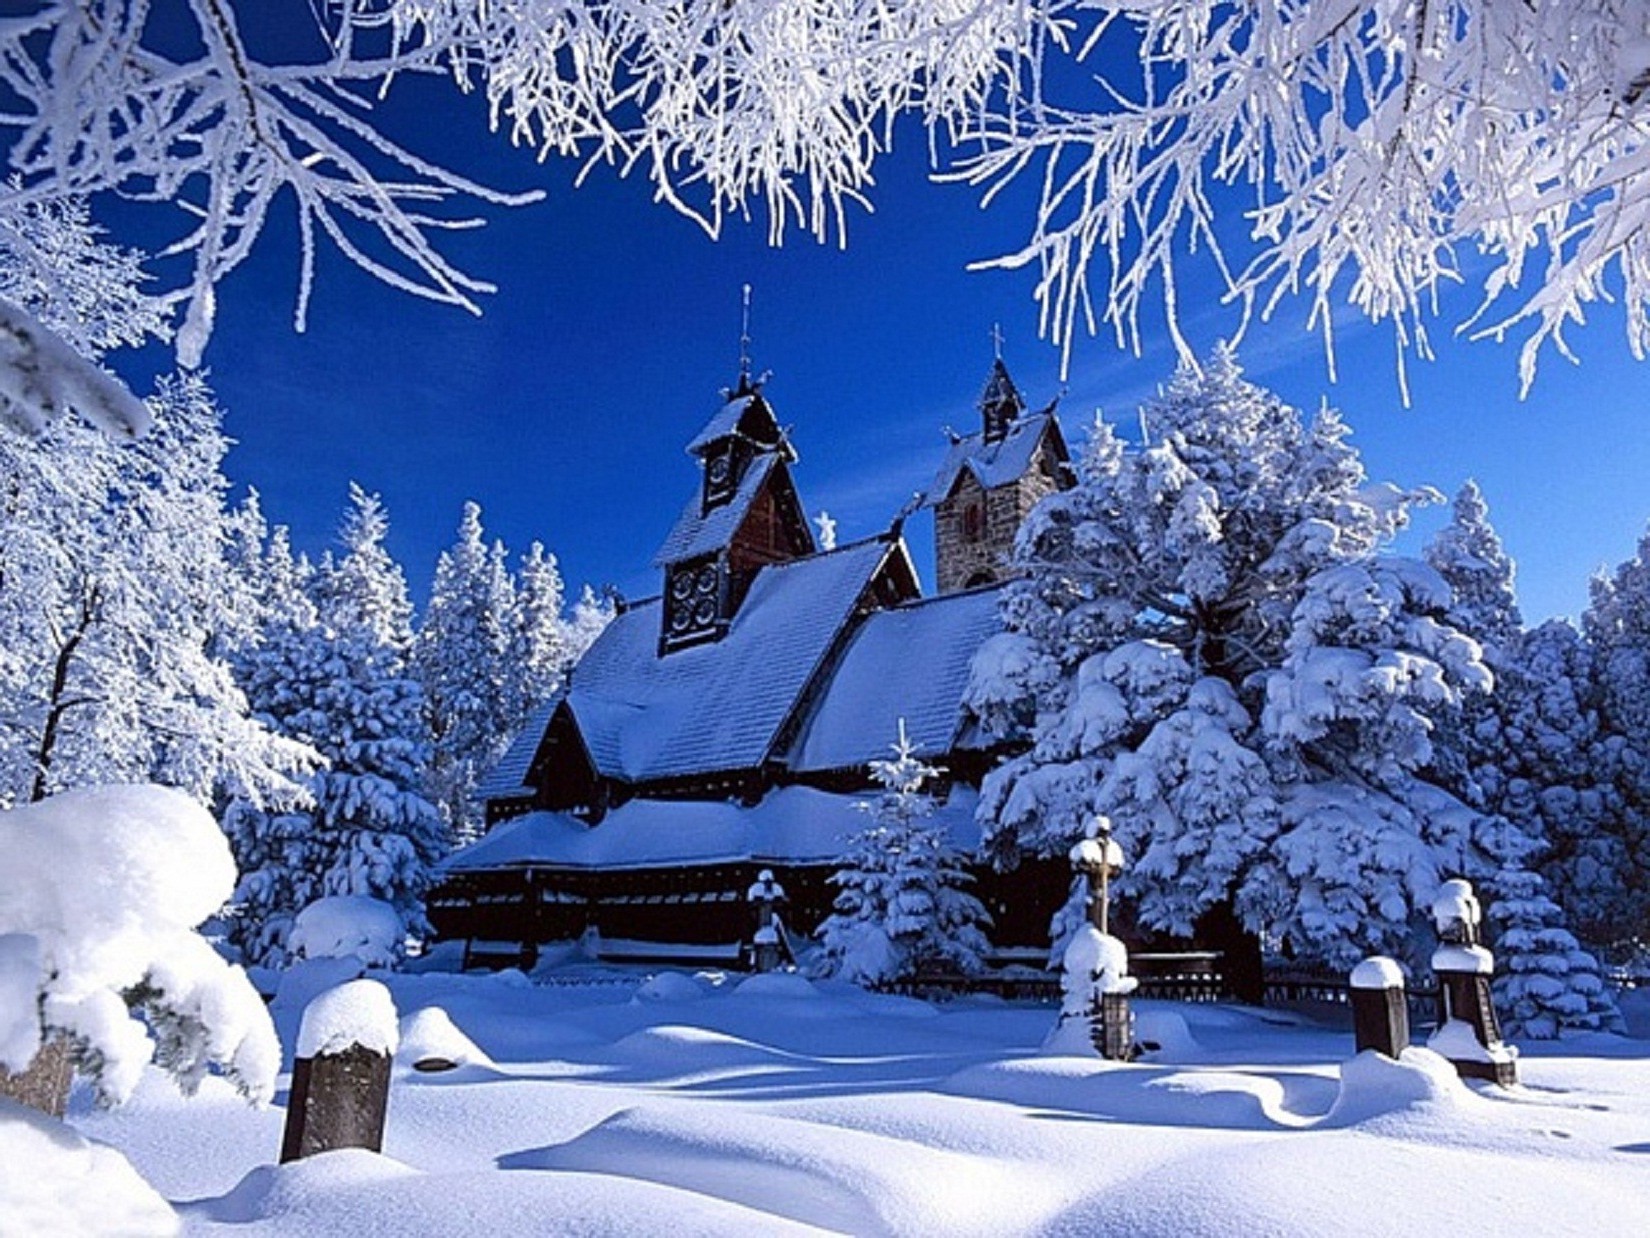 зима снег холодная мороз древесины лед дерево замороженные сезон рождество горы морозный пихта живописный снежное снег-белый пейзаж погода